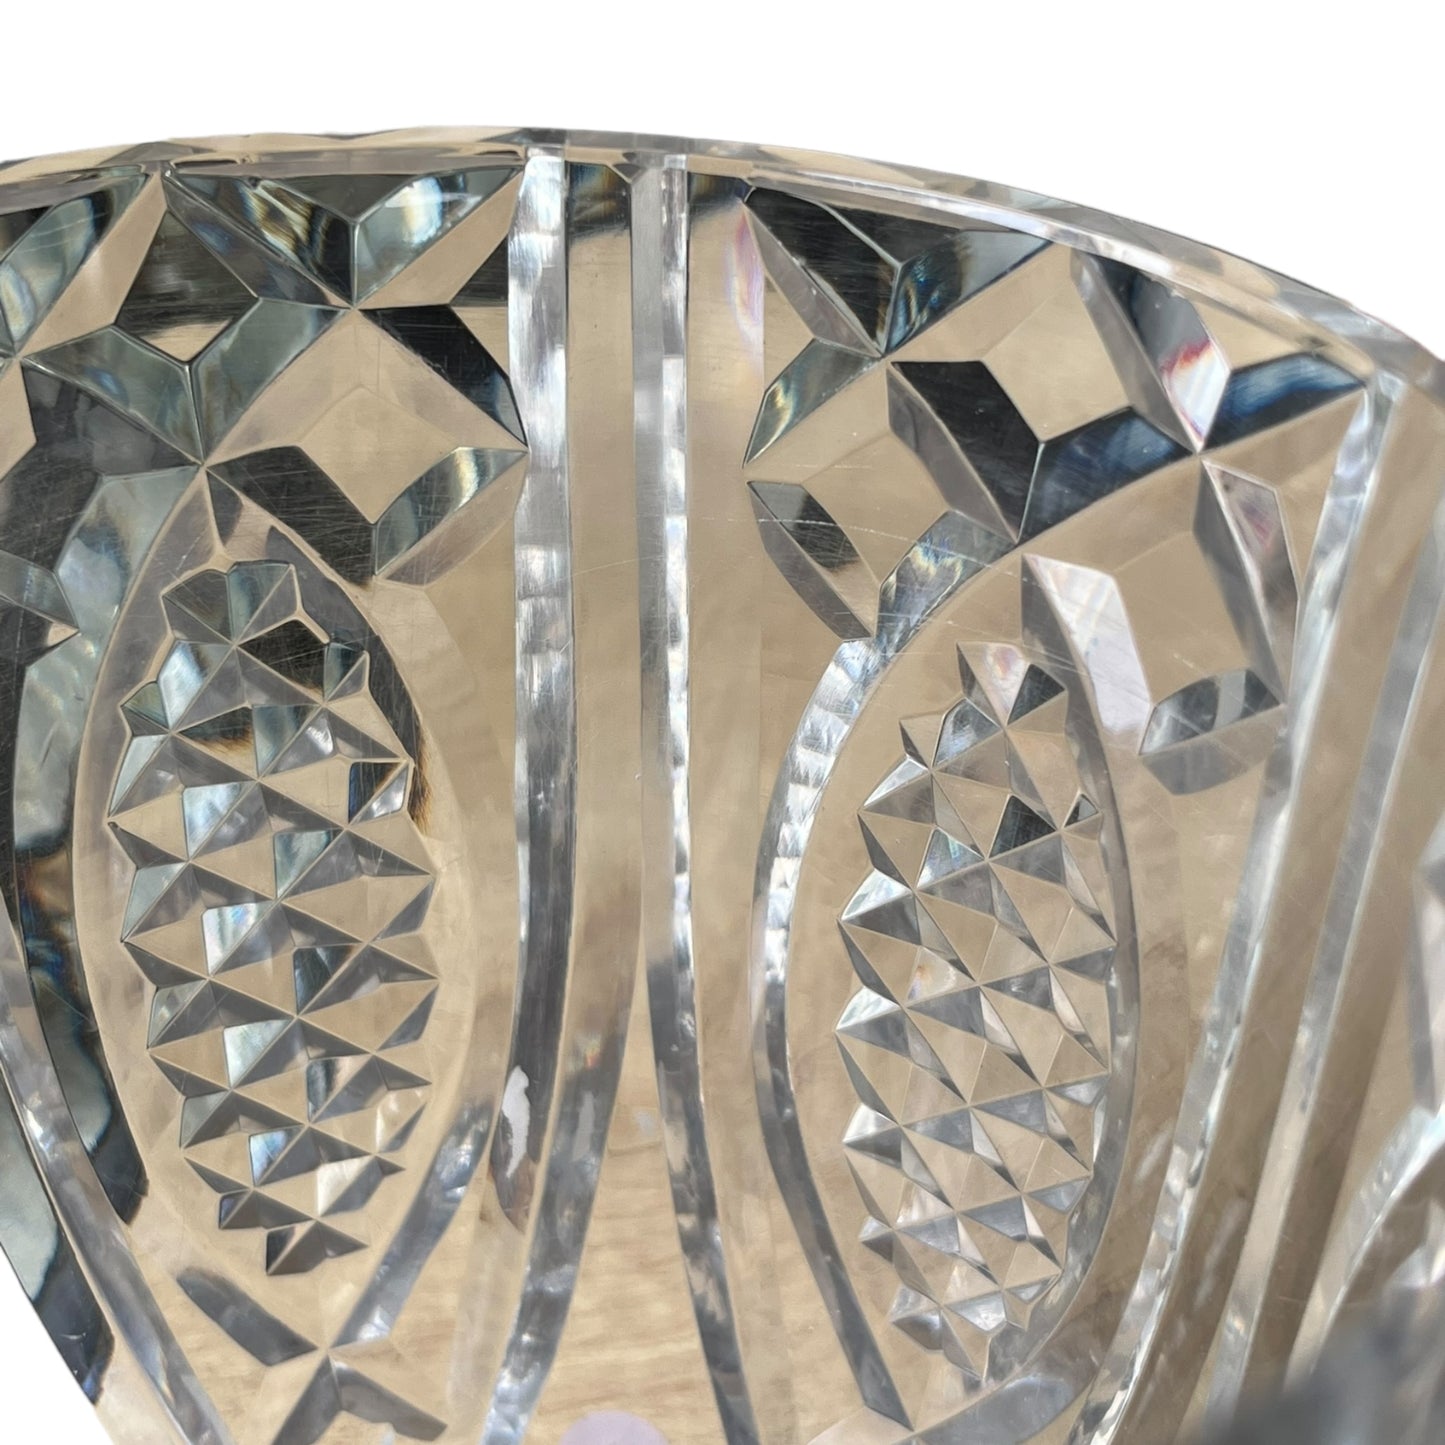 Vase en cristal Baccarat 17,8 cm